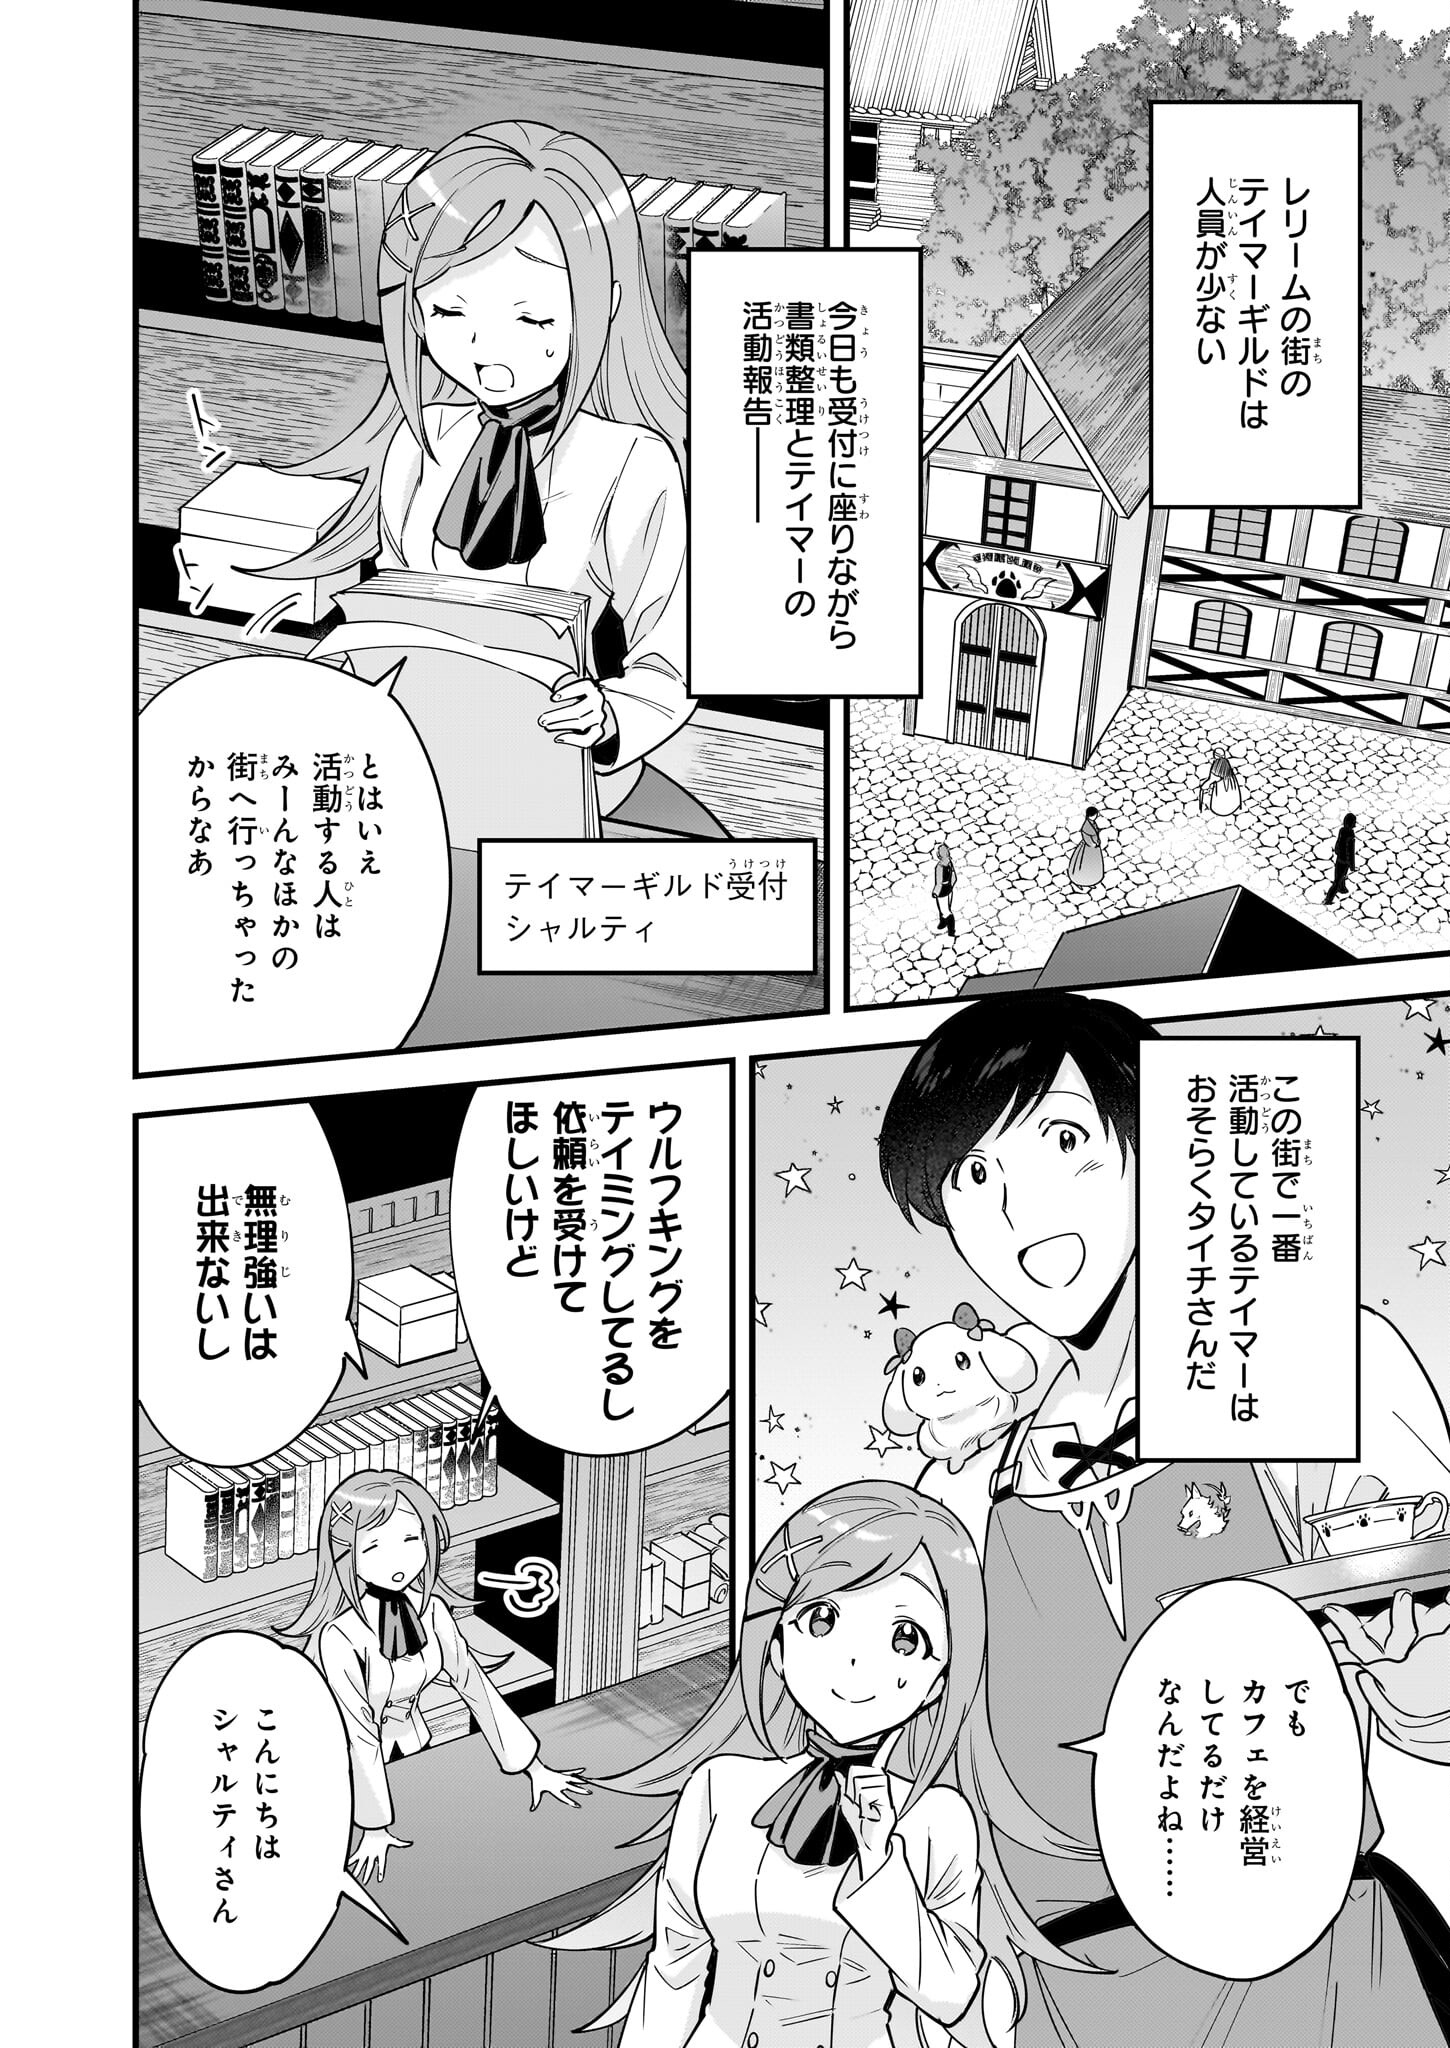 Isekai Mofumofu Cafe - Chapter 20 - Page 2